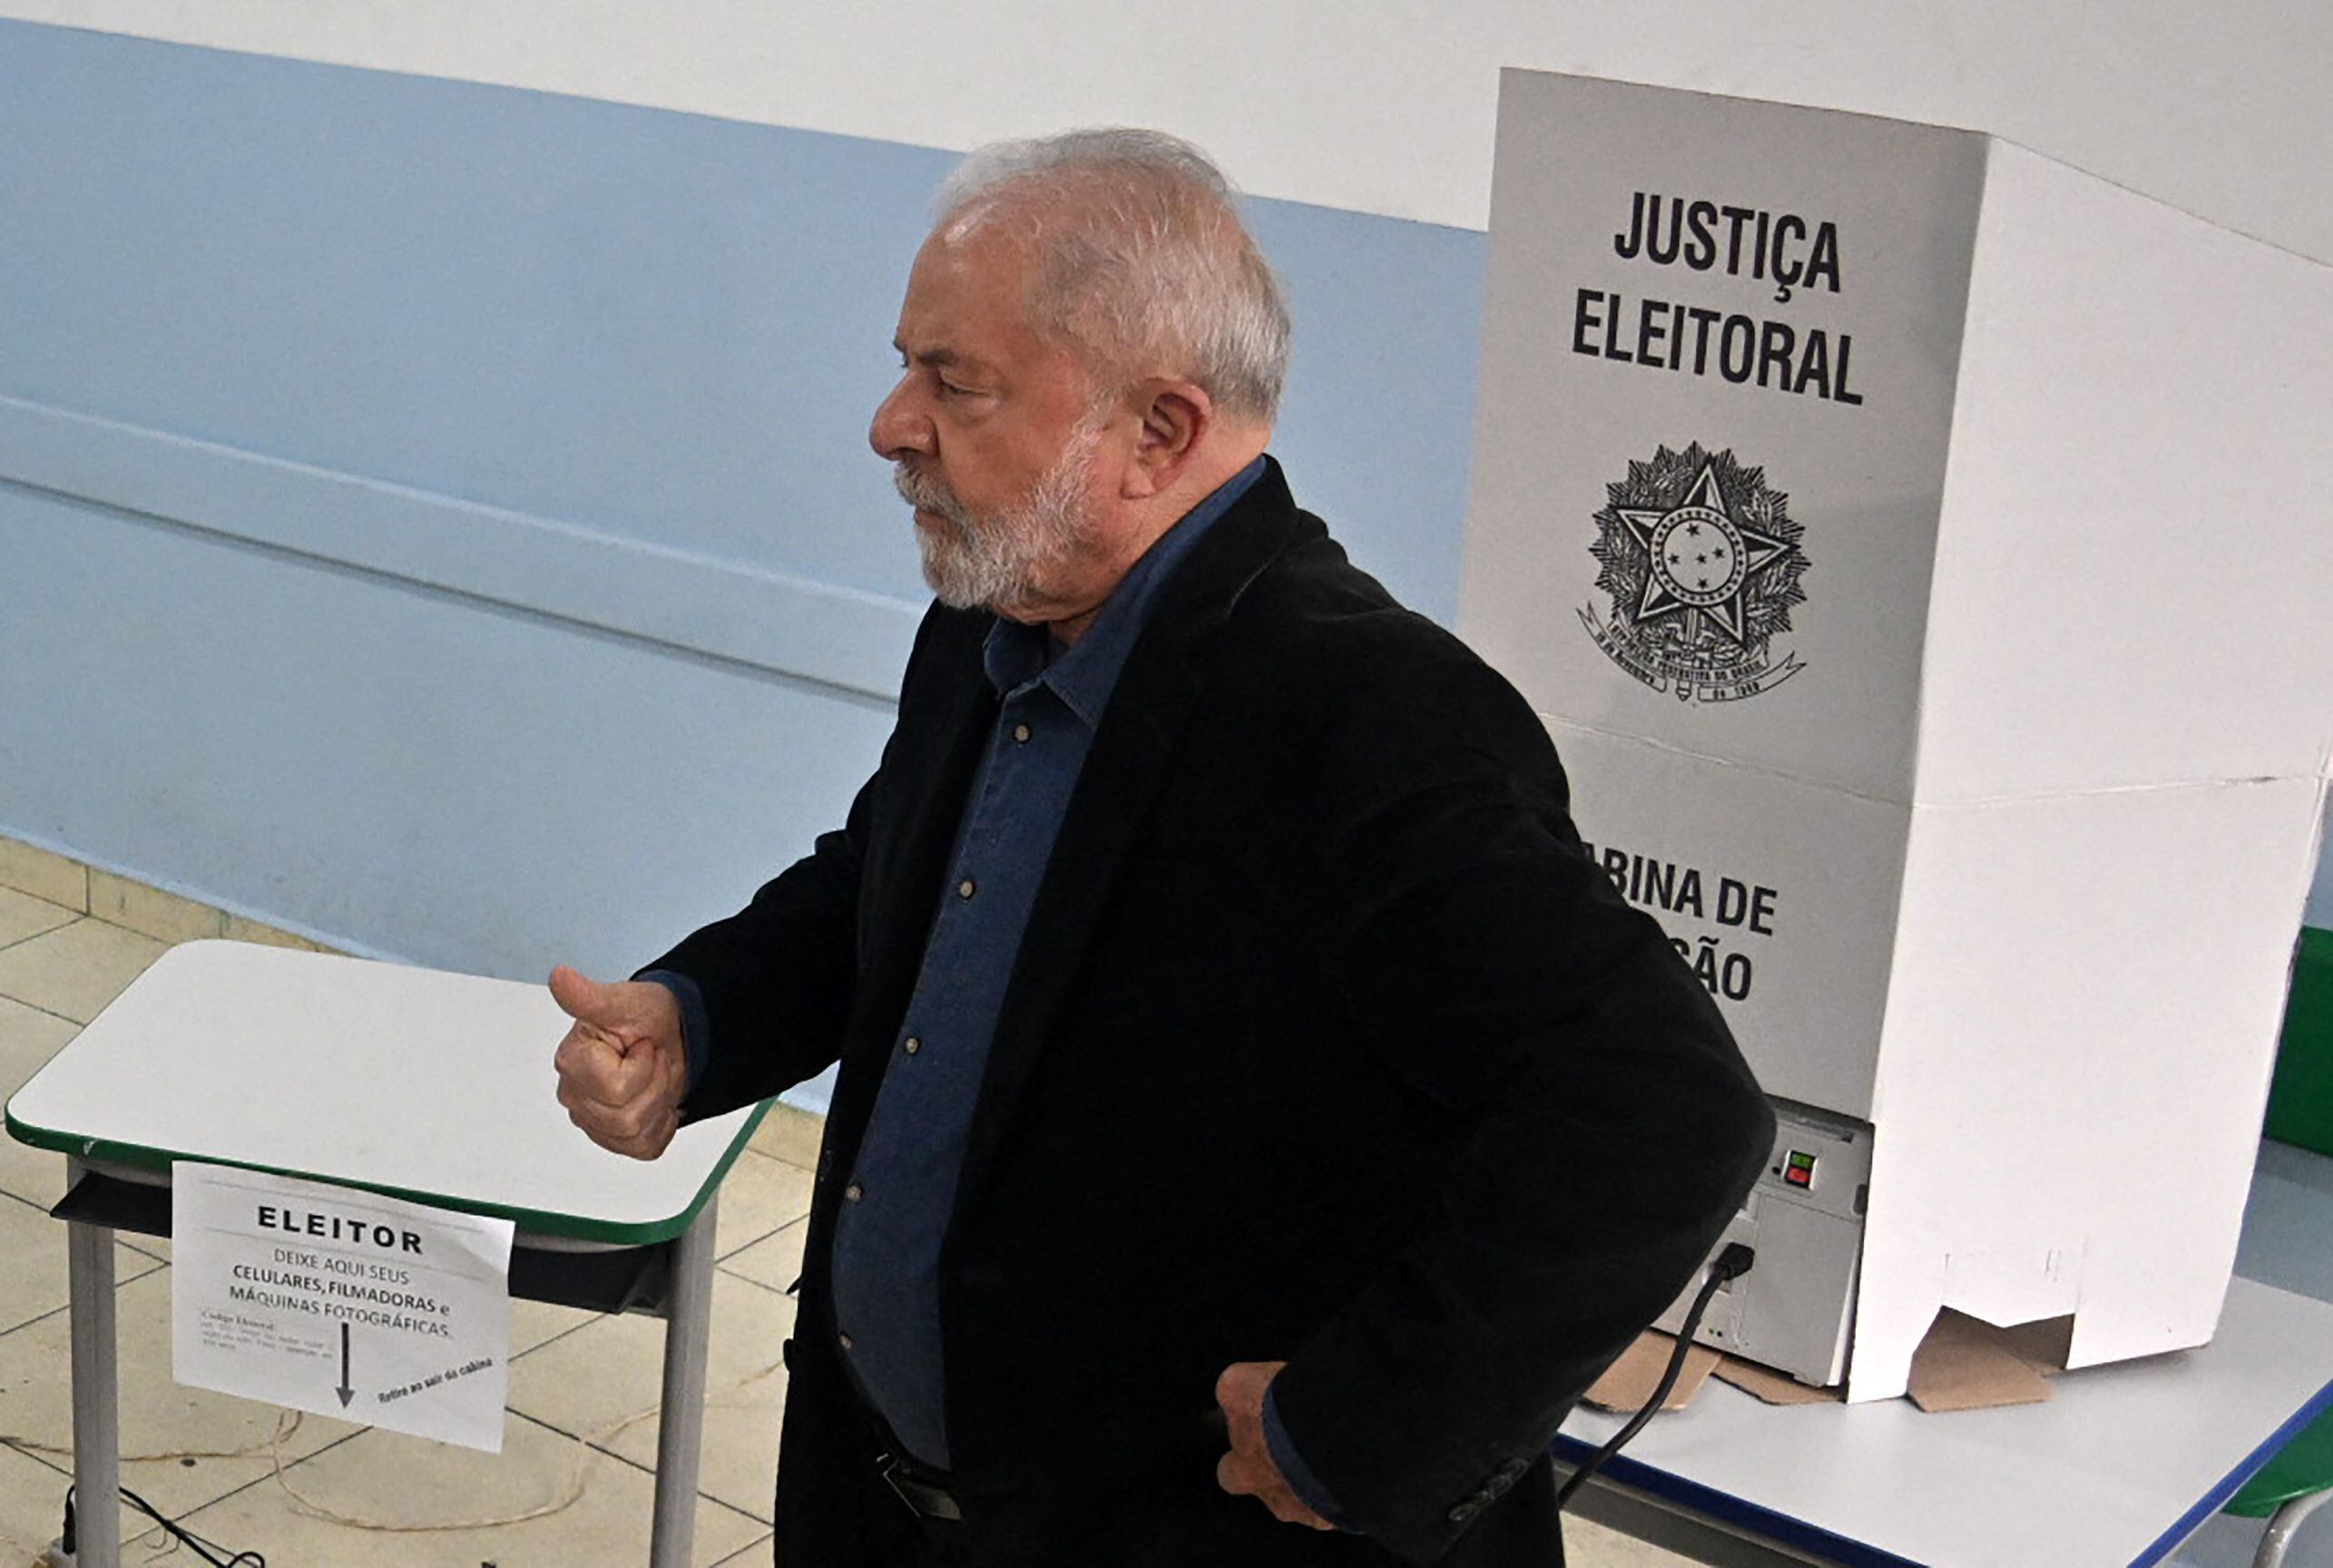 El expresidente brasileño y candidato del izquierdista Partido de los Trabajadores (PT) Luiz Inacio Lula da Silva (C), levanta el pulgar mientras vota durante las elecciones legislativas y presidenciales, en Sao Paulo, Brasil, el 2 de octubre.